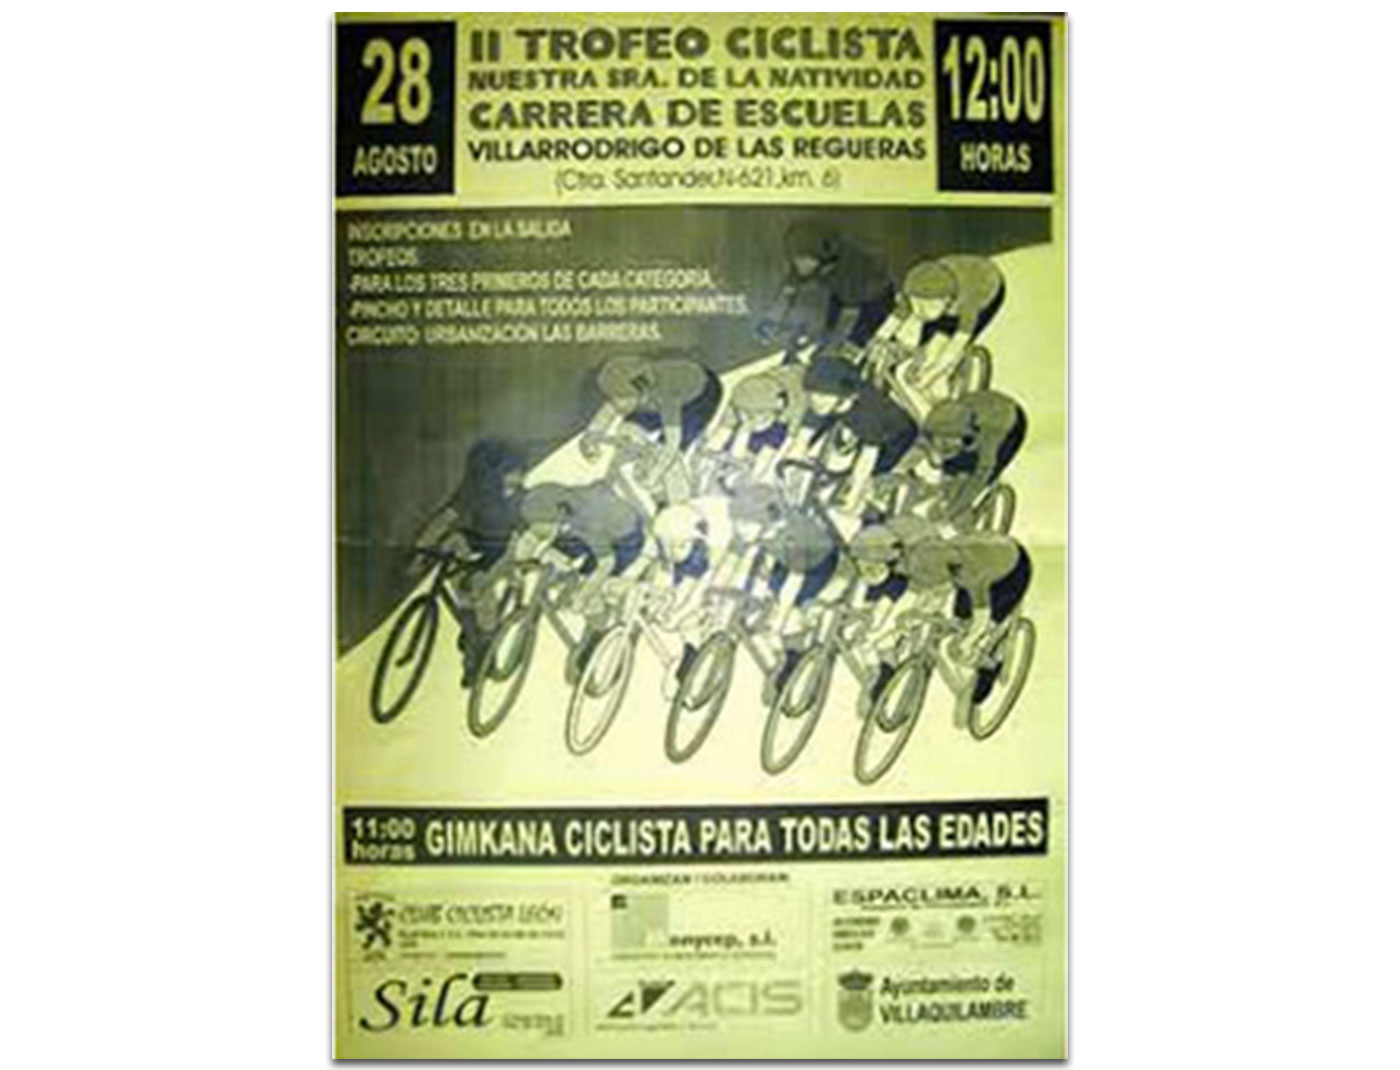 II Trofeo Ciclista